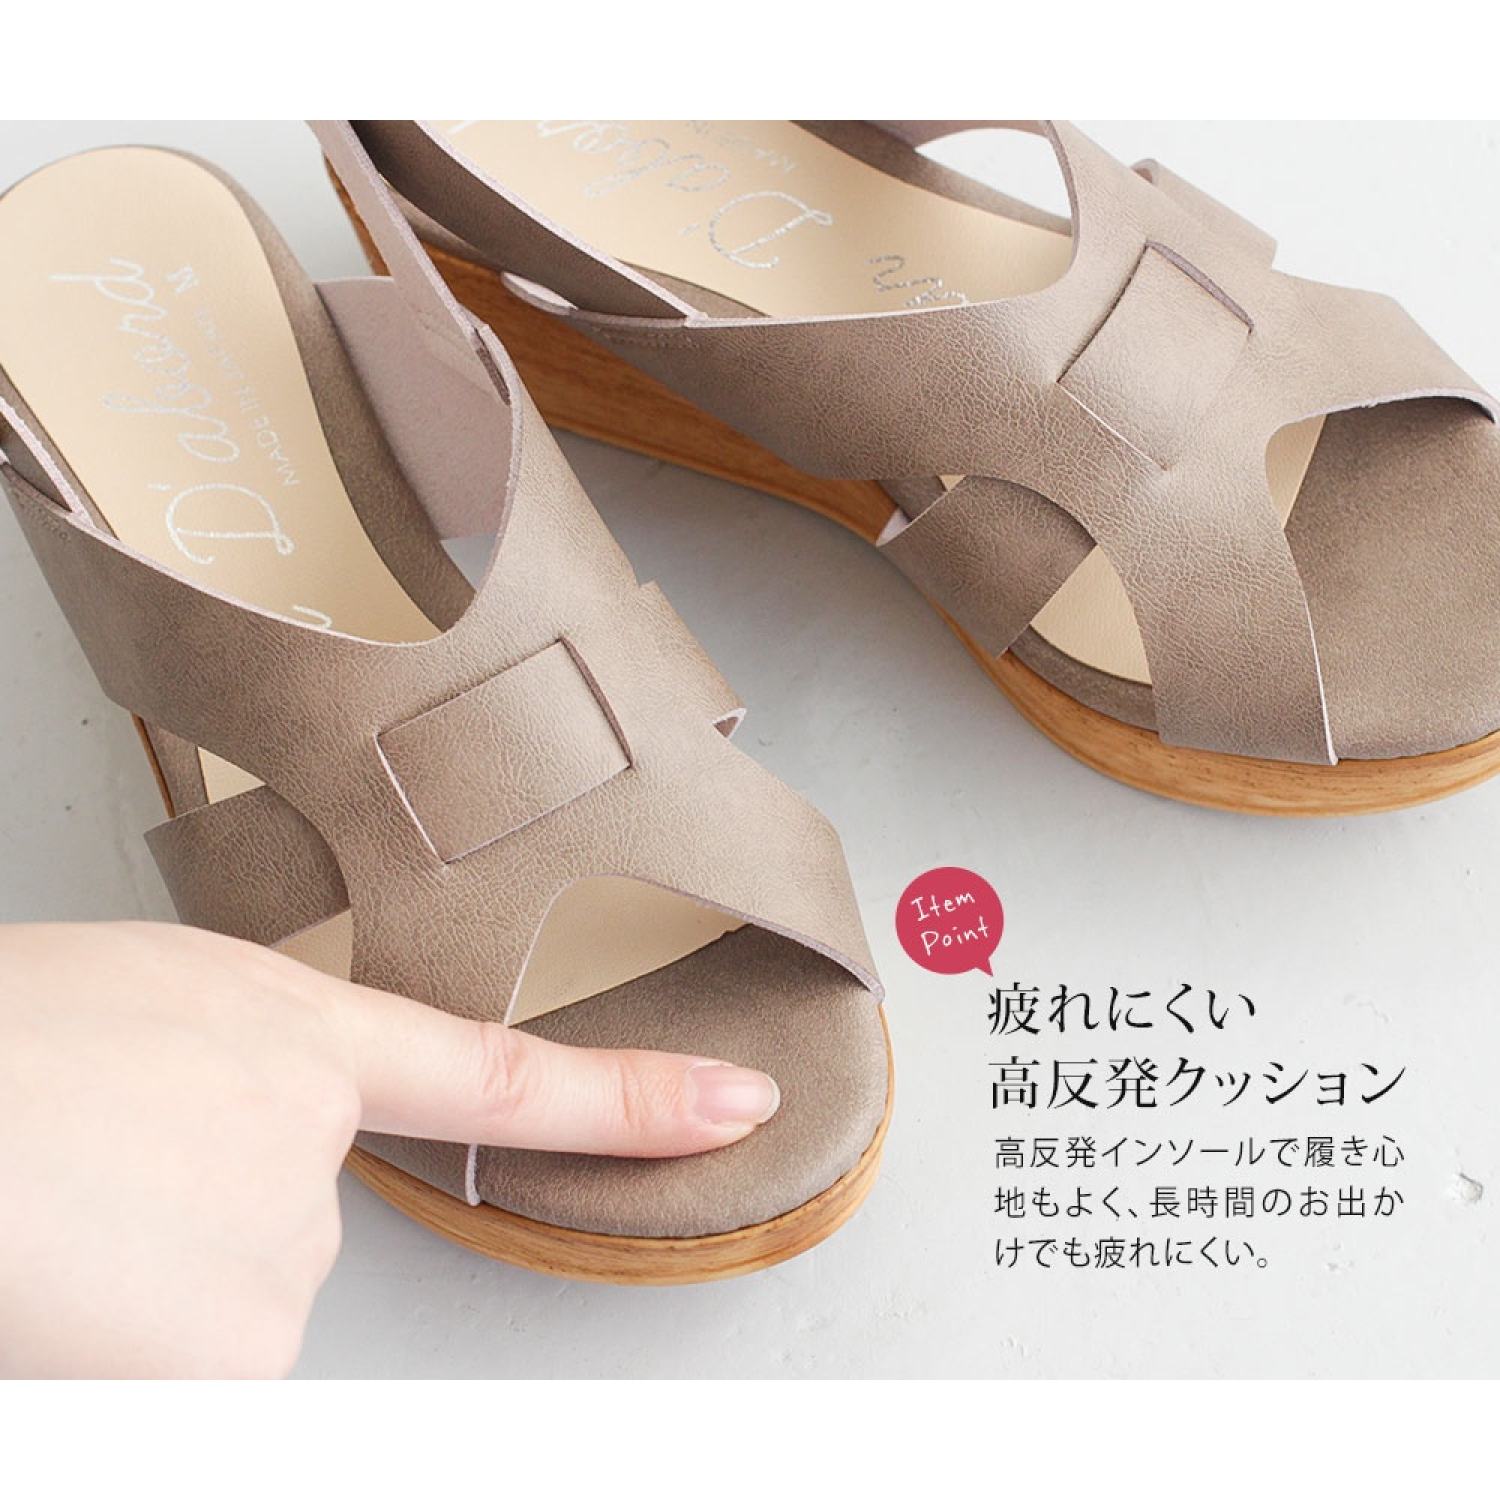 Sandal nữ đế xuồng Partir D'abord 92858 dáng sang mang nhẹ, cao 5,5 cm made  in Japan Kobe Nhật Bản | Lazada.vn